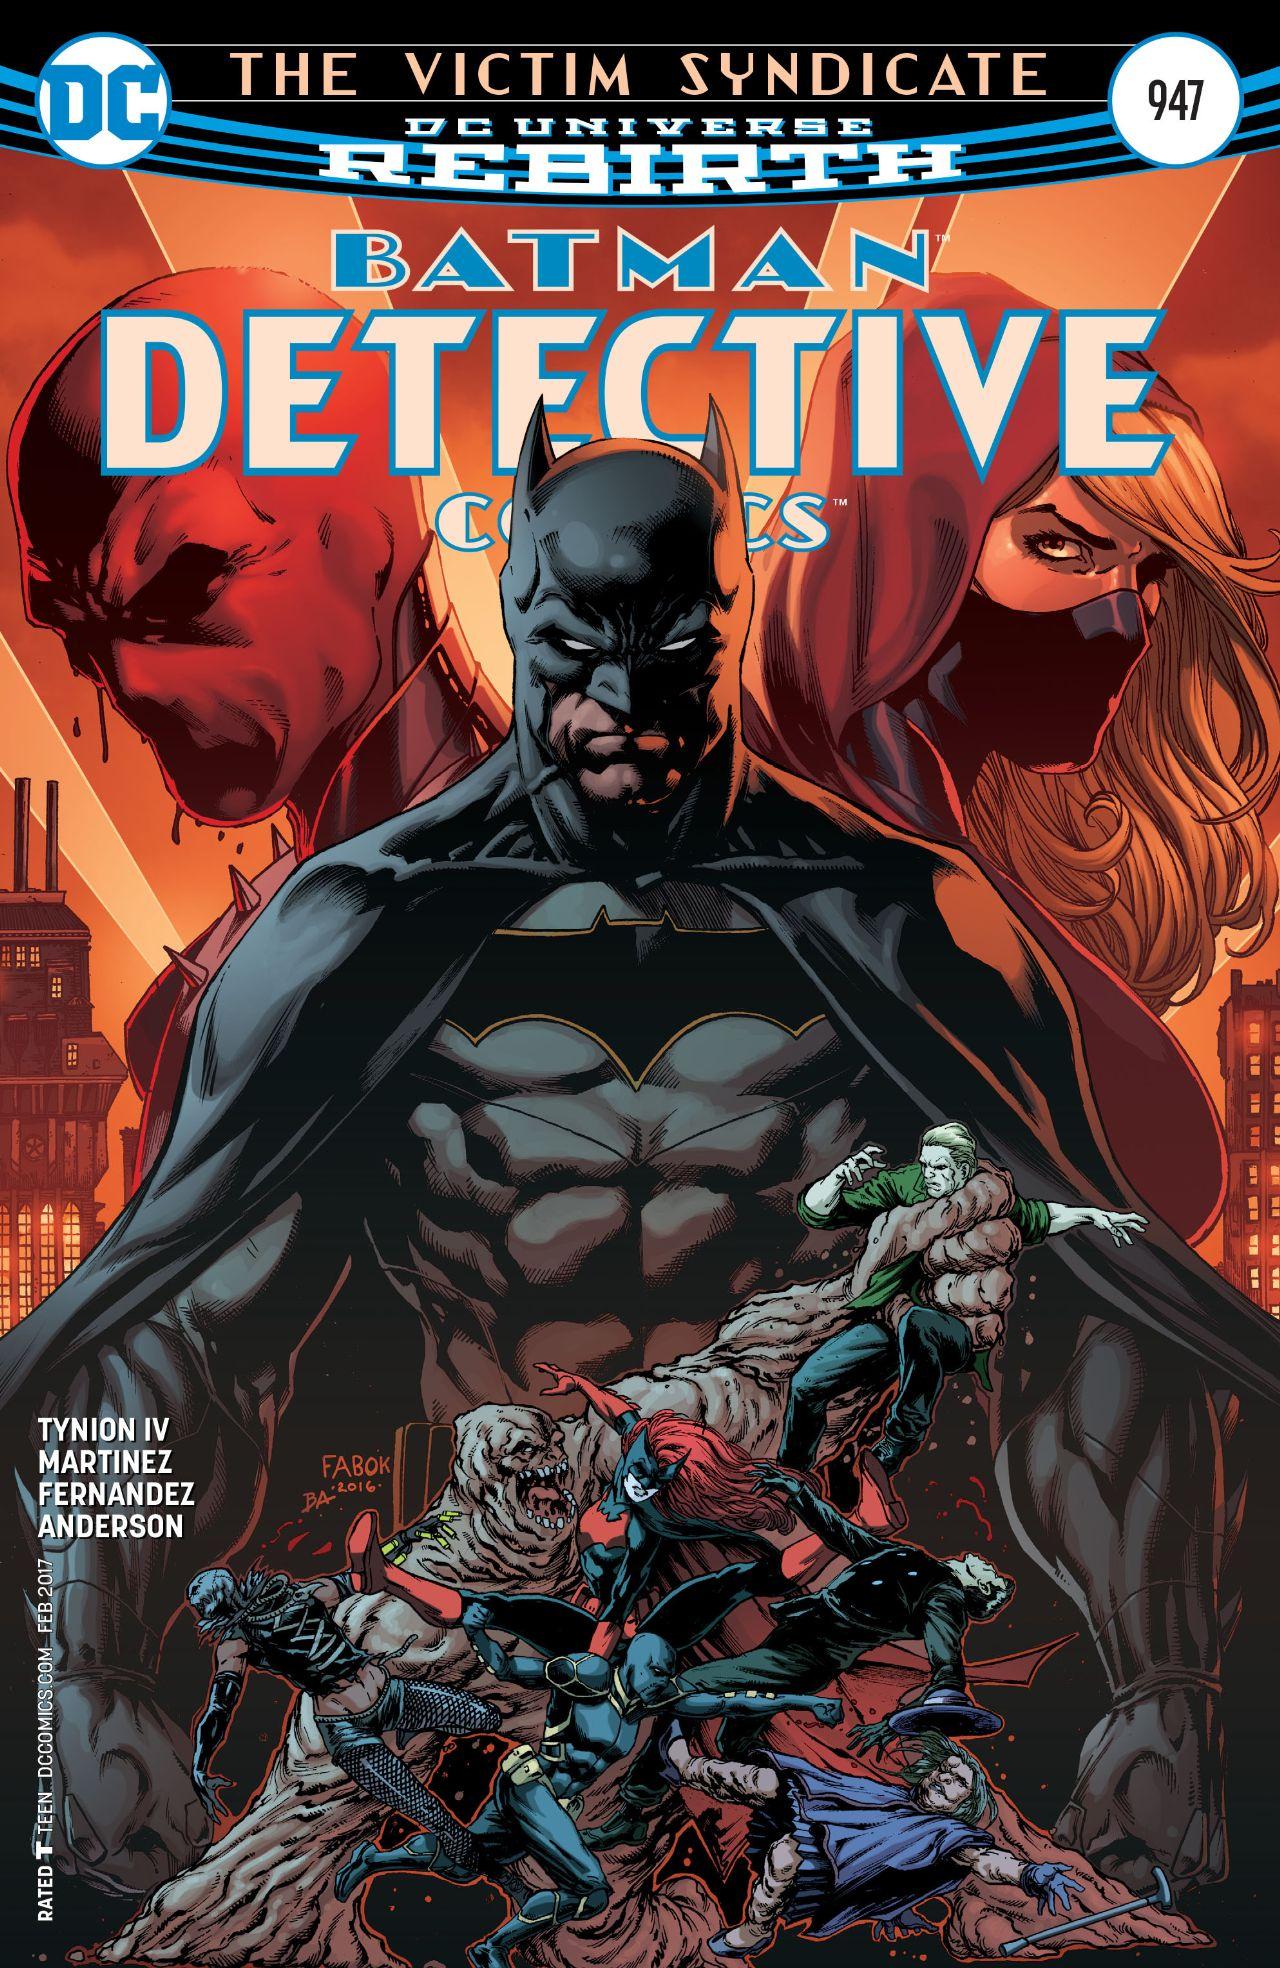 Detective Comics Vol. 1 #947